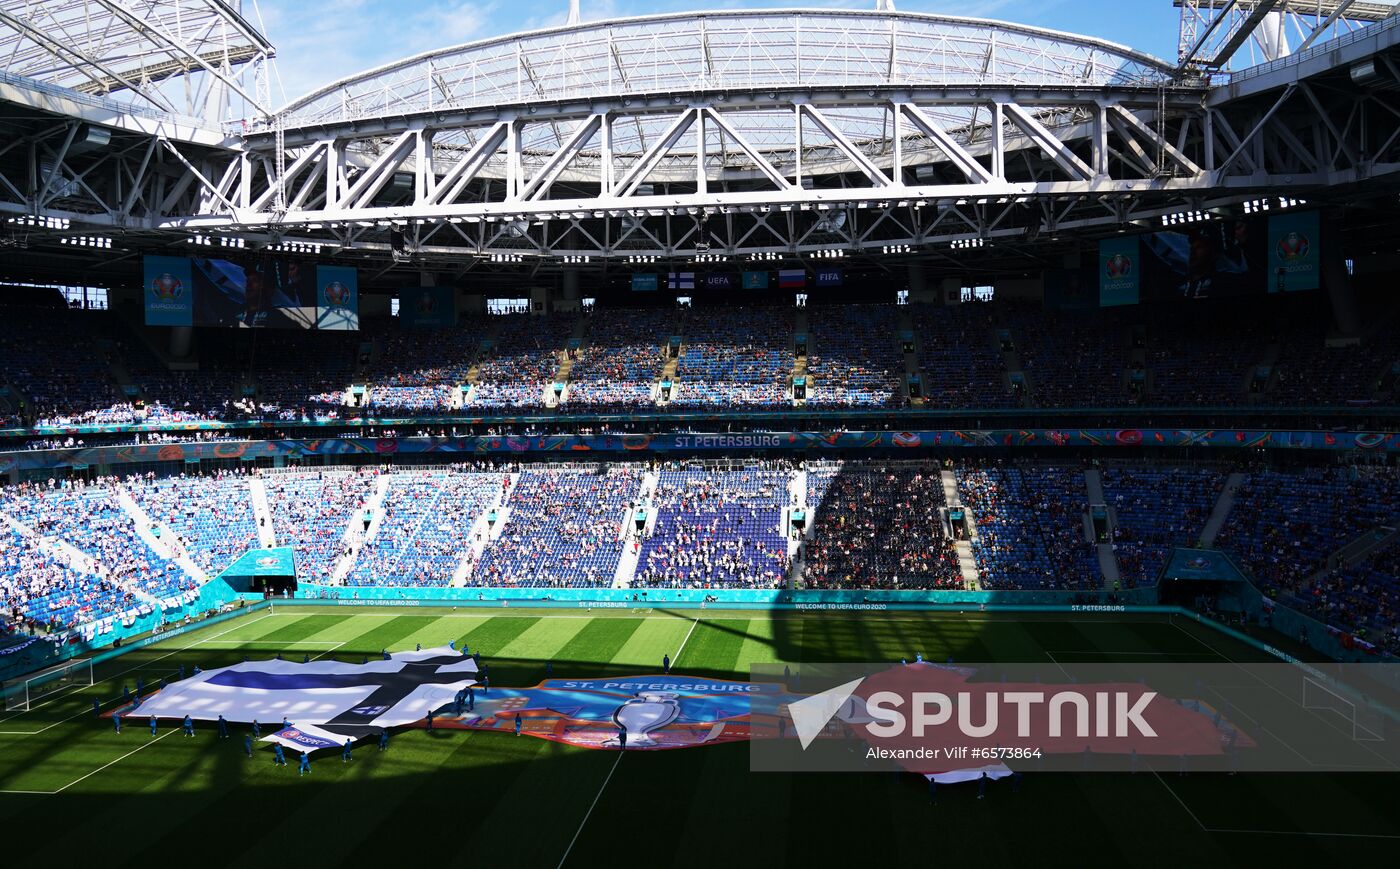 Russia Soccer Euro 2020 Finland - Russia